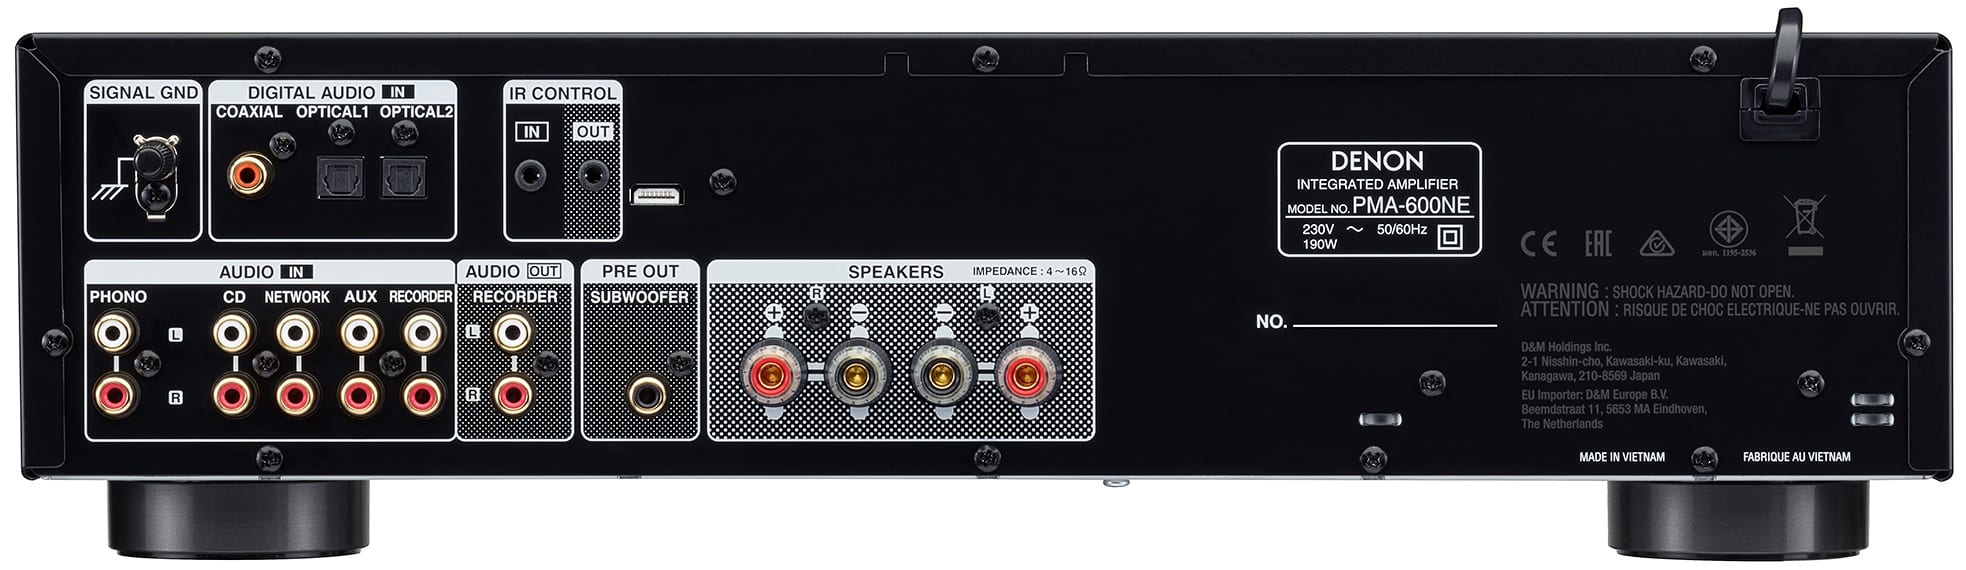 Denon PMA-600NE zwart - achterkant - Stereo versterker